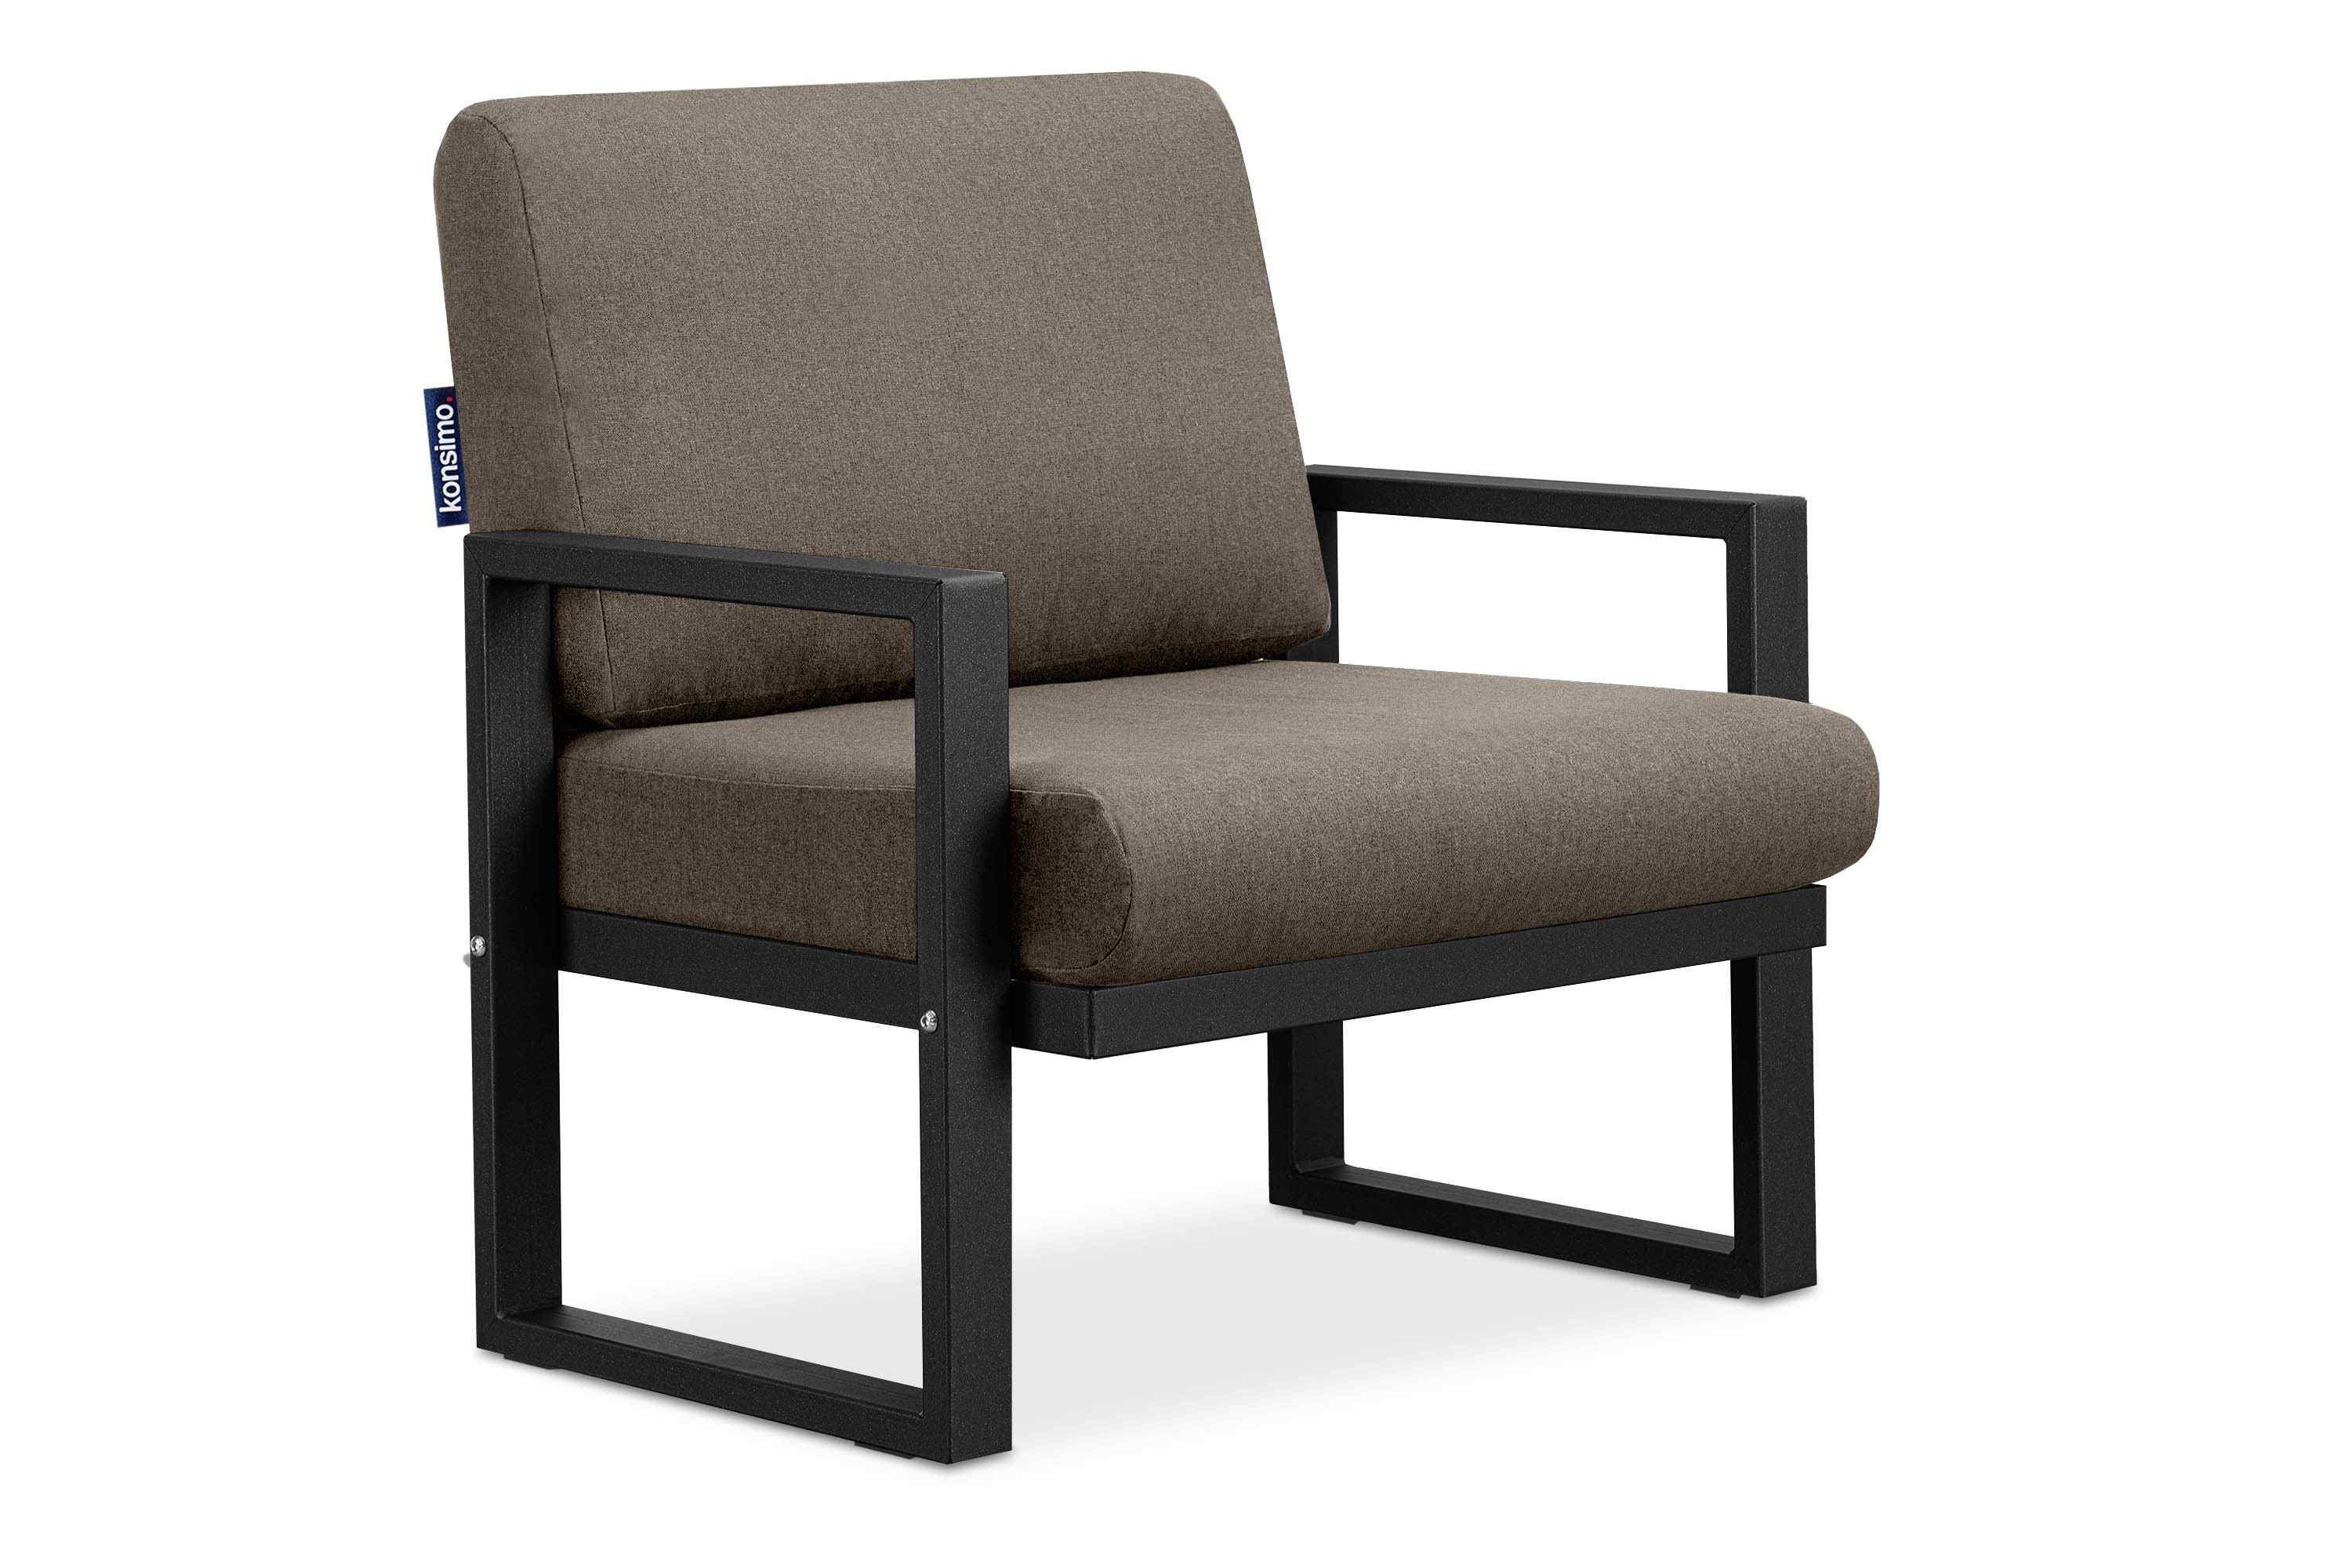 Konsimo Gartensessel FRENA Garten-Sessel (1x Sessel), pflegeleicht, bequeme Sitz- und Rückenkissen, schmutz- und wasserabweisend, UV-Beständigkeit schwarz/beige